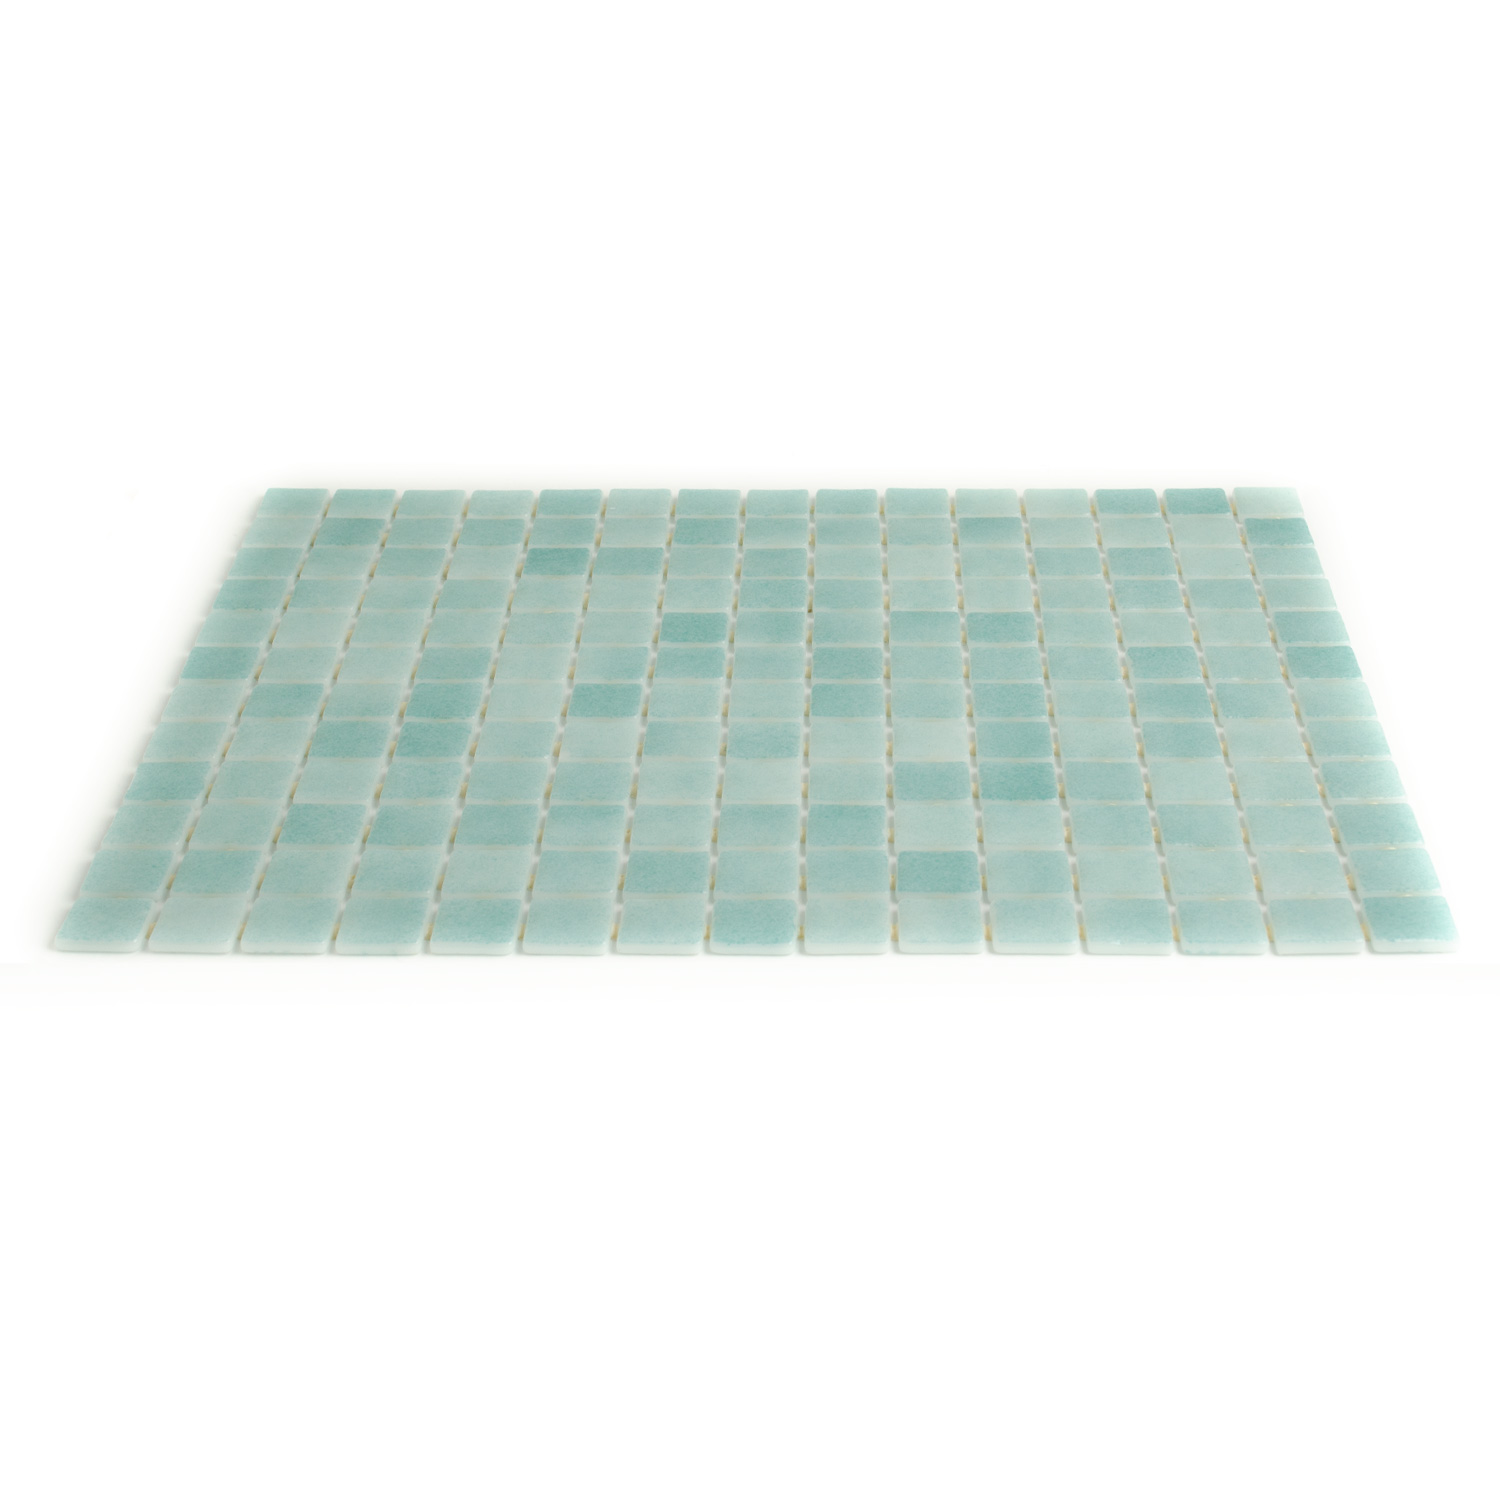 Schwimmbad Mosaik Glasmosaik Blaugrün Bianca